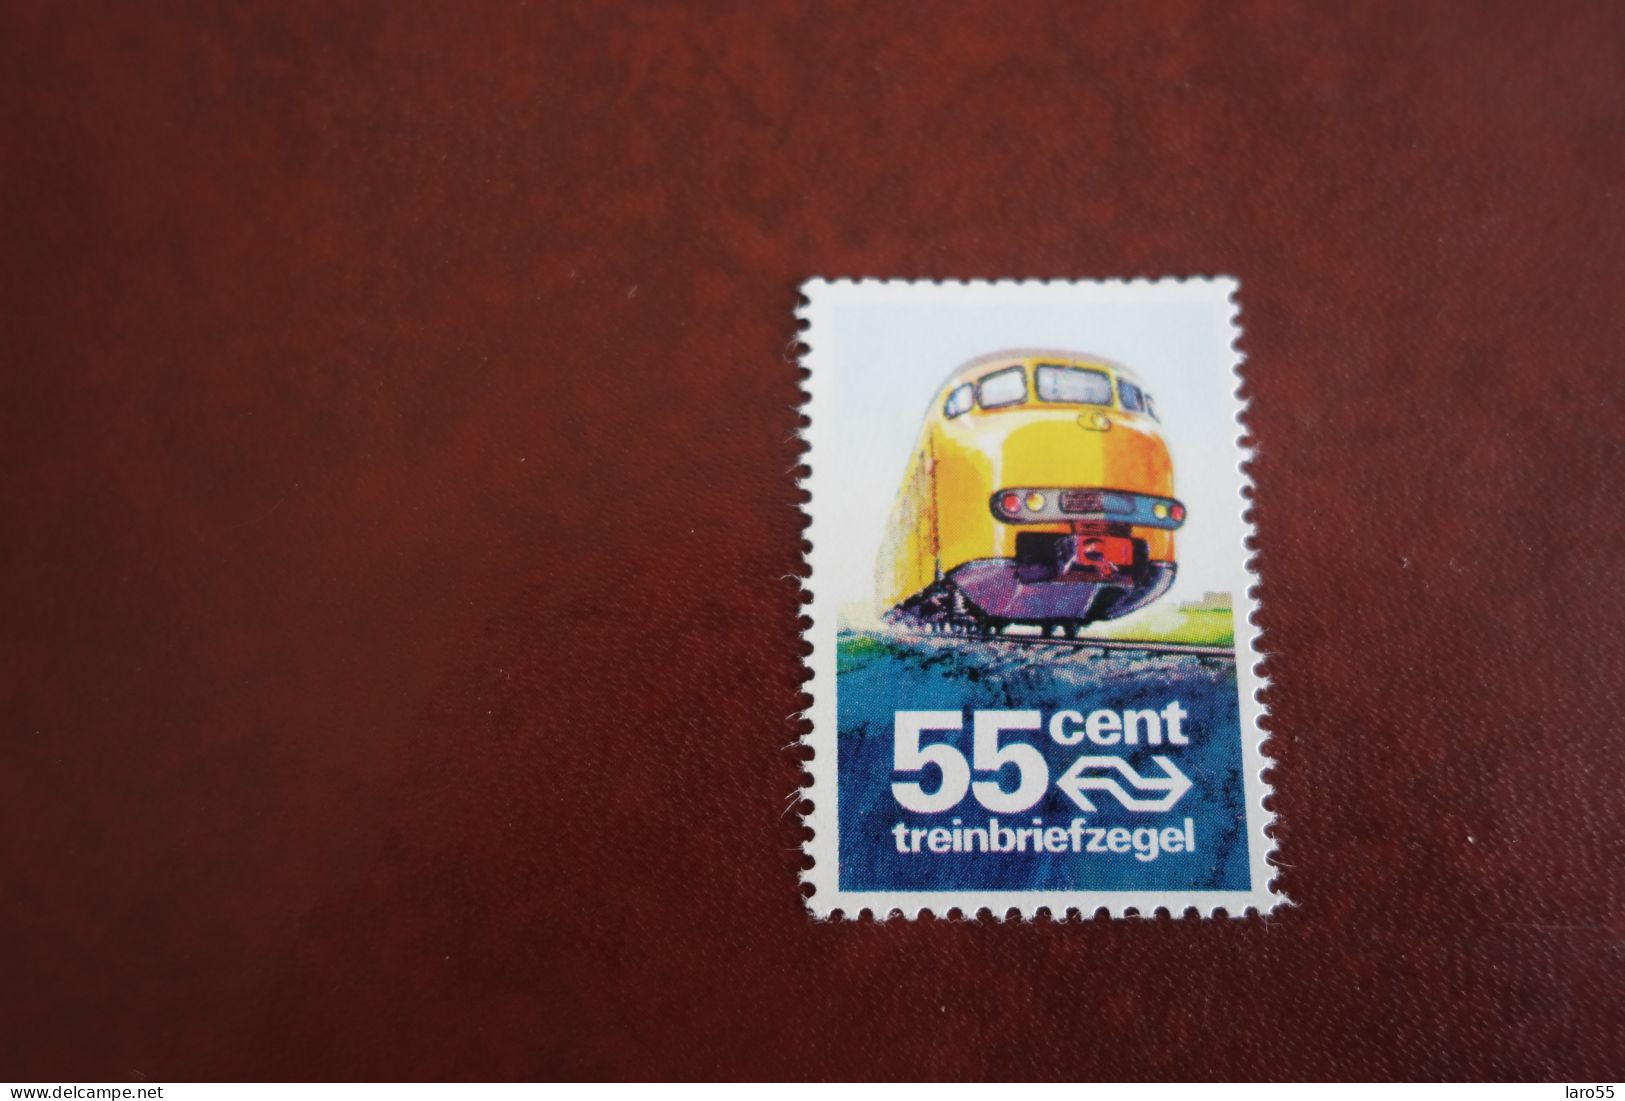 Treinbriefzegel 55 Cent - Ferrovie